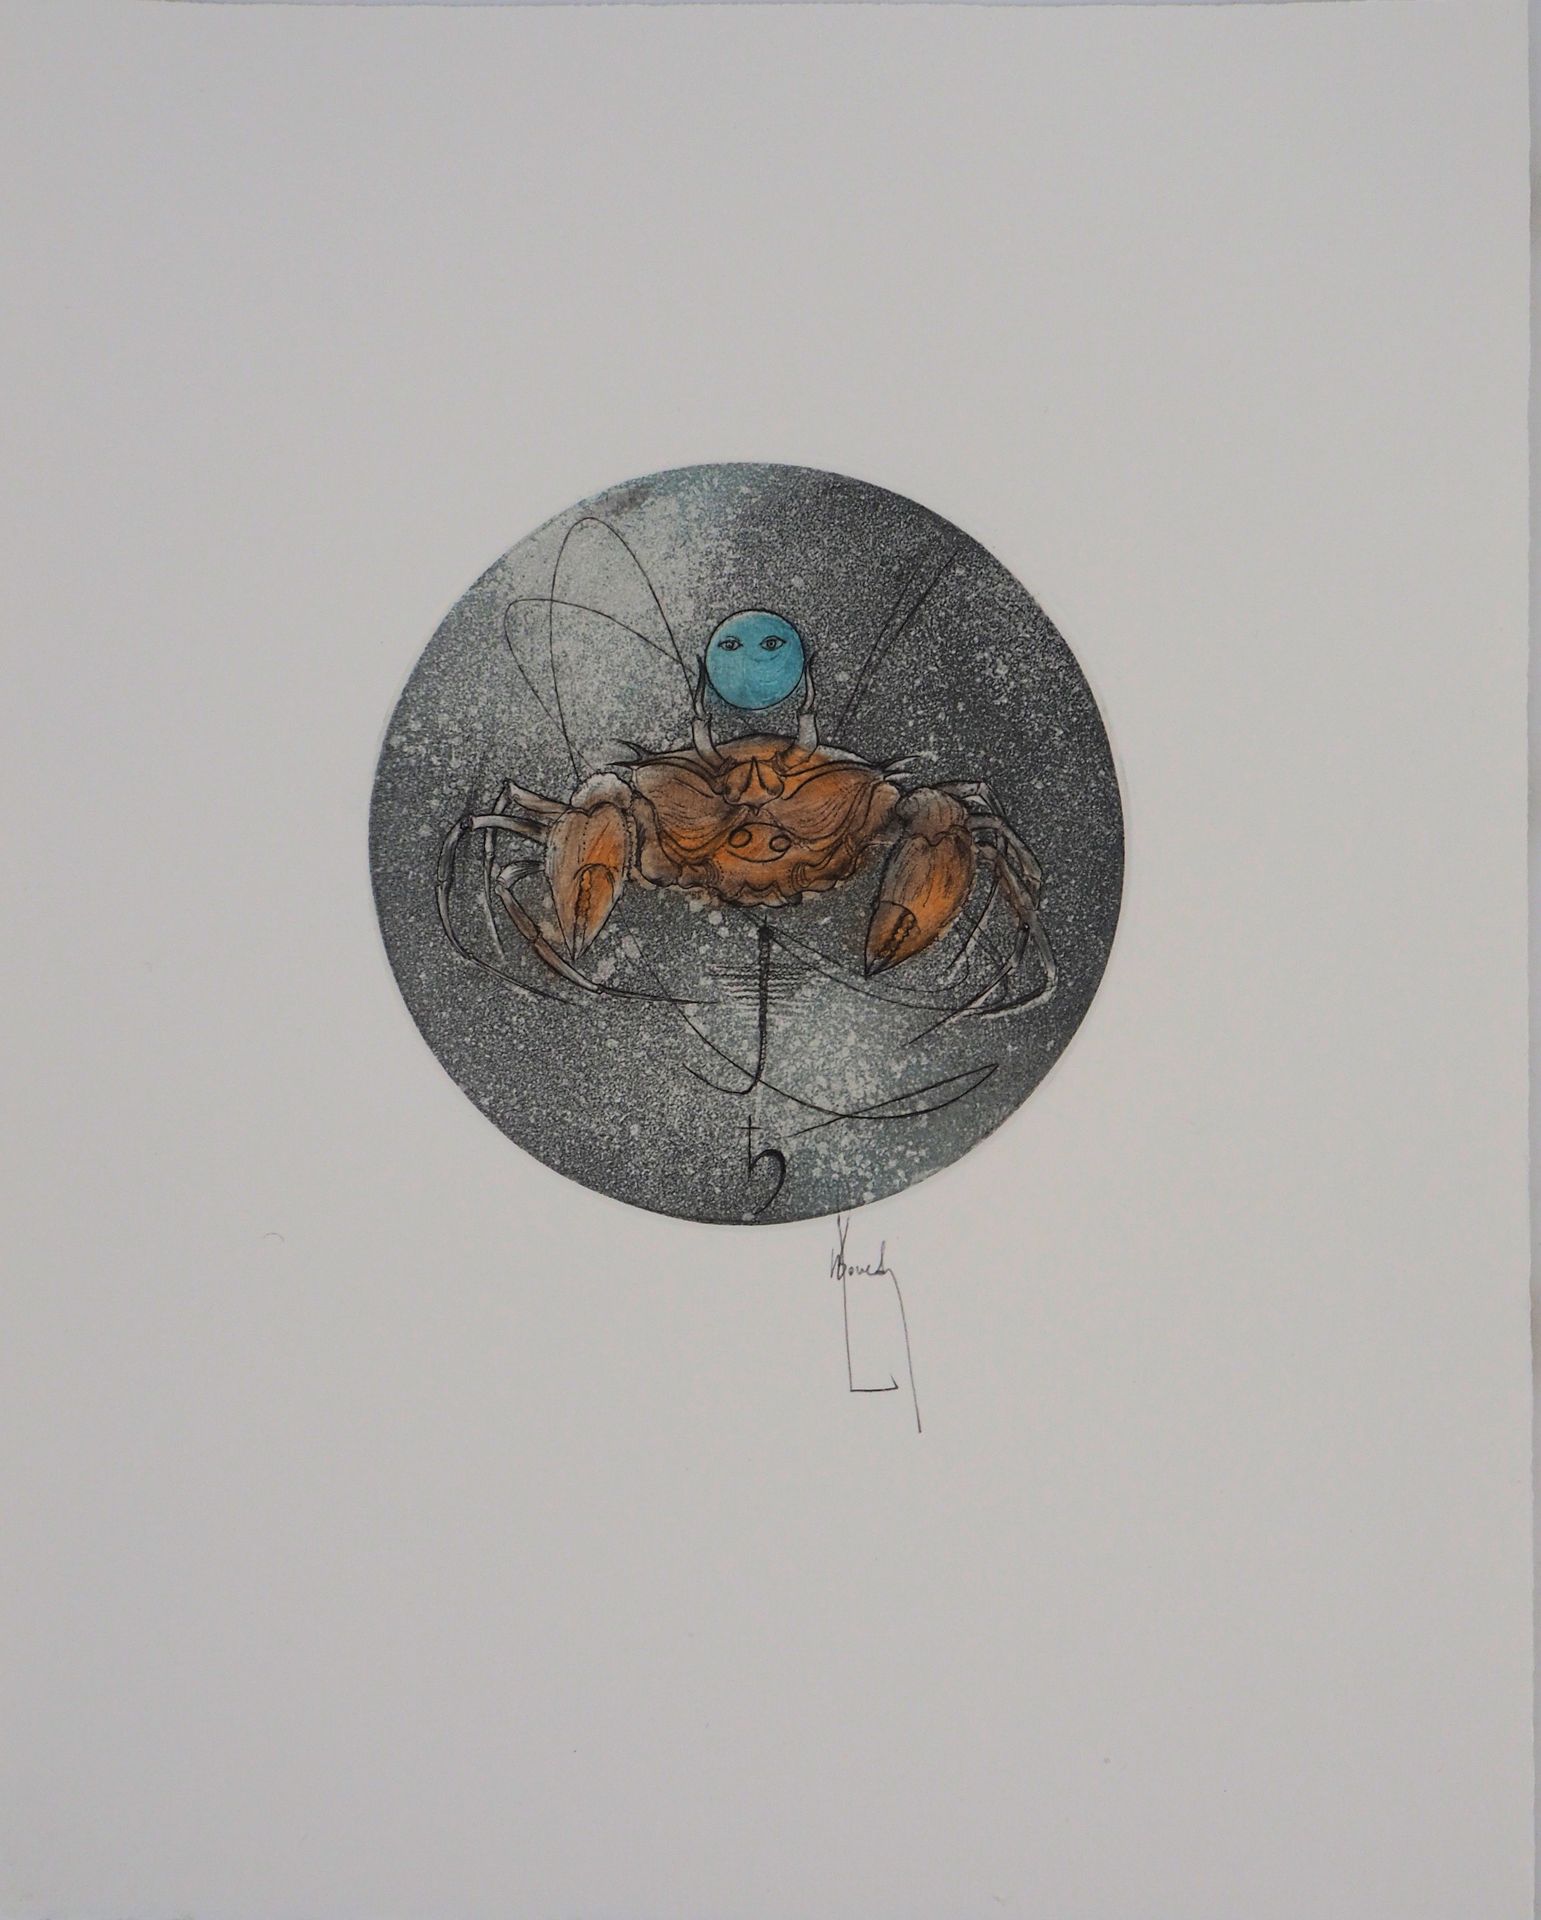 Bernard LOUEDIN Bernard LOUEDIN (1938)

星座; 巨蟹座, 1999年

原始蚀刻画

用铅笔签名

牛皮纸上 29 x &hellip;